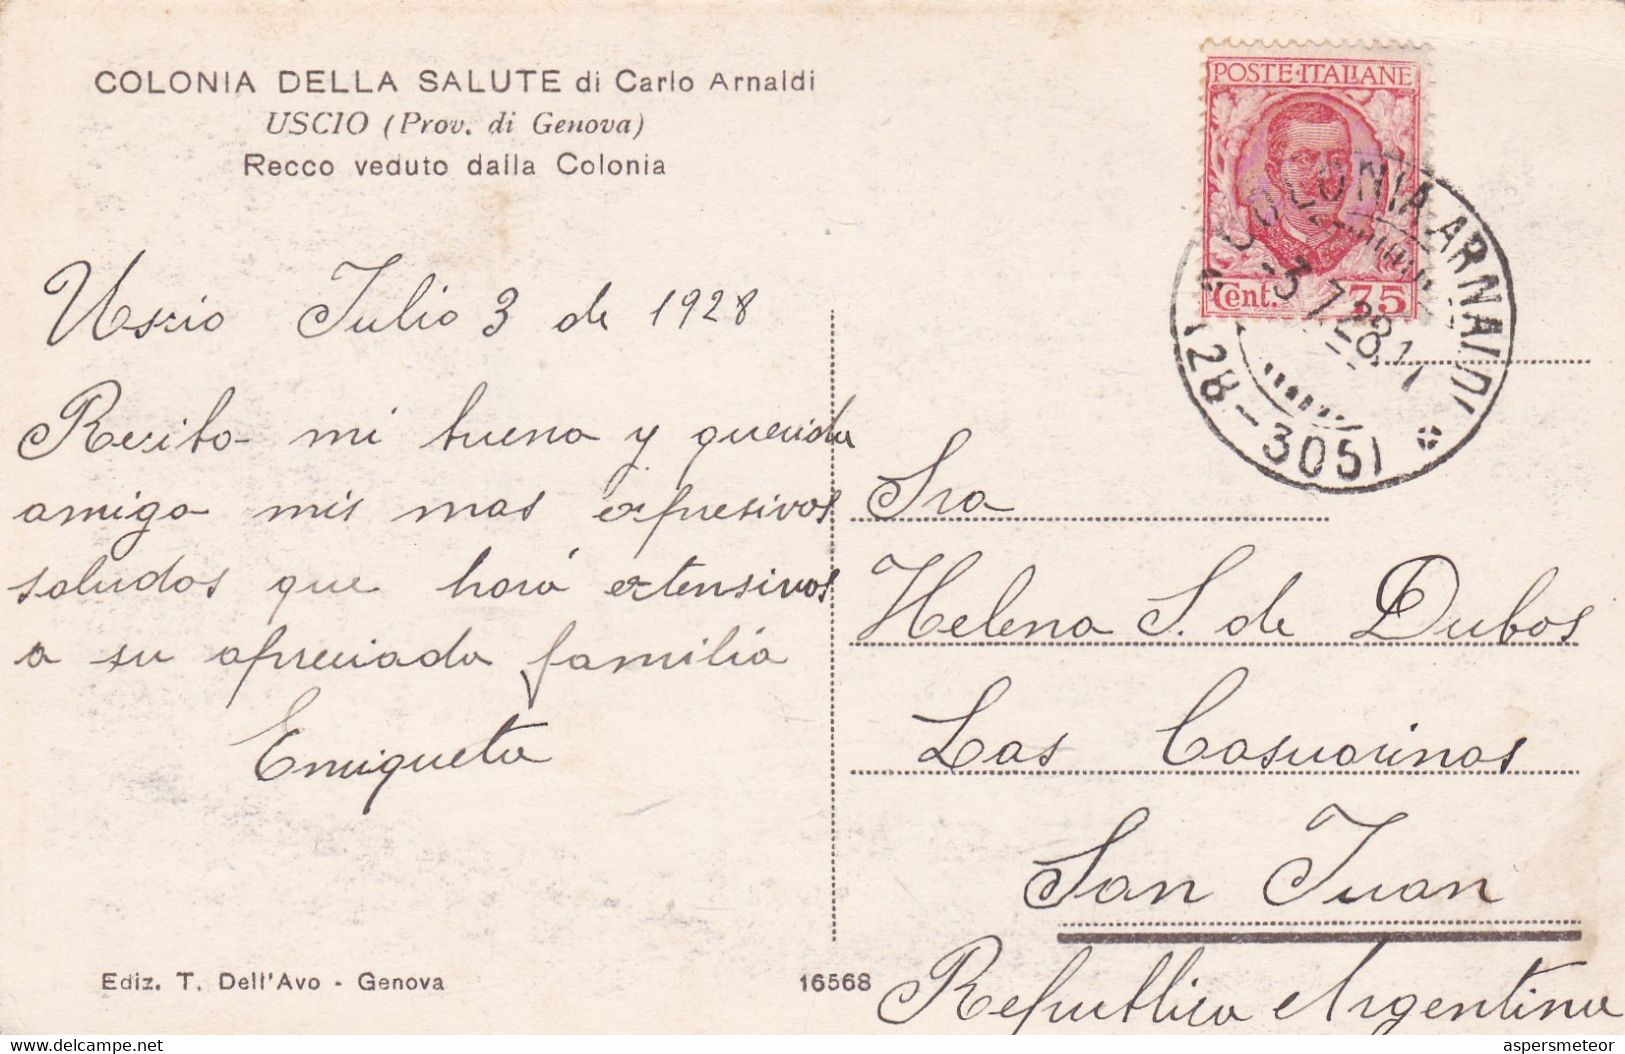 COLONIA DELLA SALUTE DI CARLO ARNALDI, USCIO GENOVA. ITALIE CARTE POSTALE CIRCULEE 1928 SAN JUAN ARGENTINE.- LILHU - Genova (Genoa)